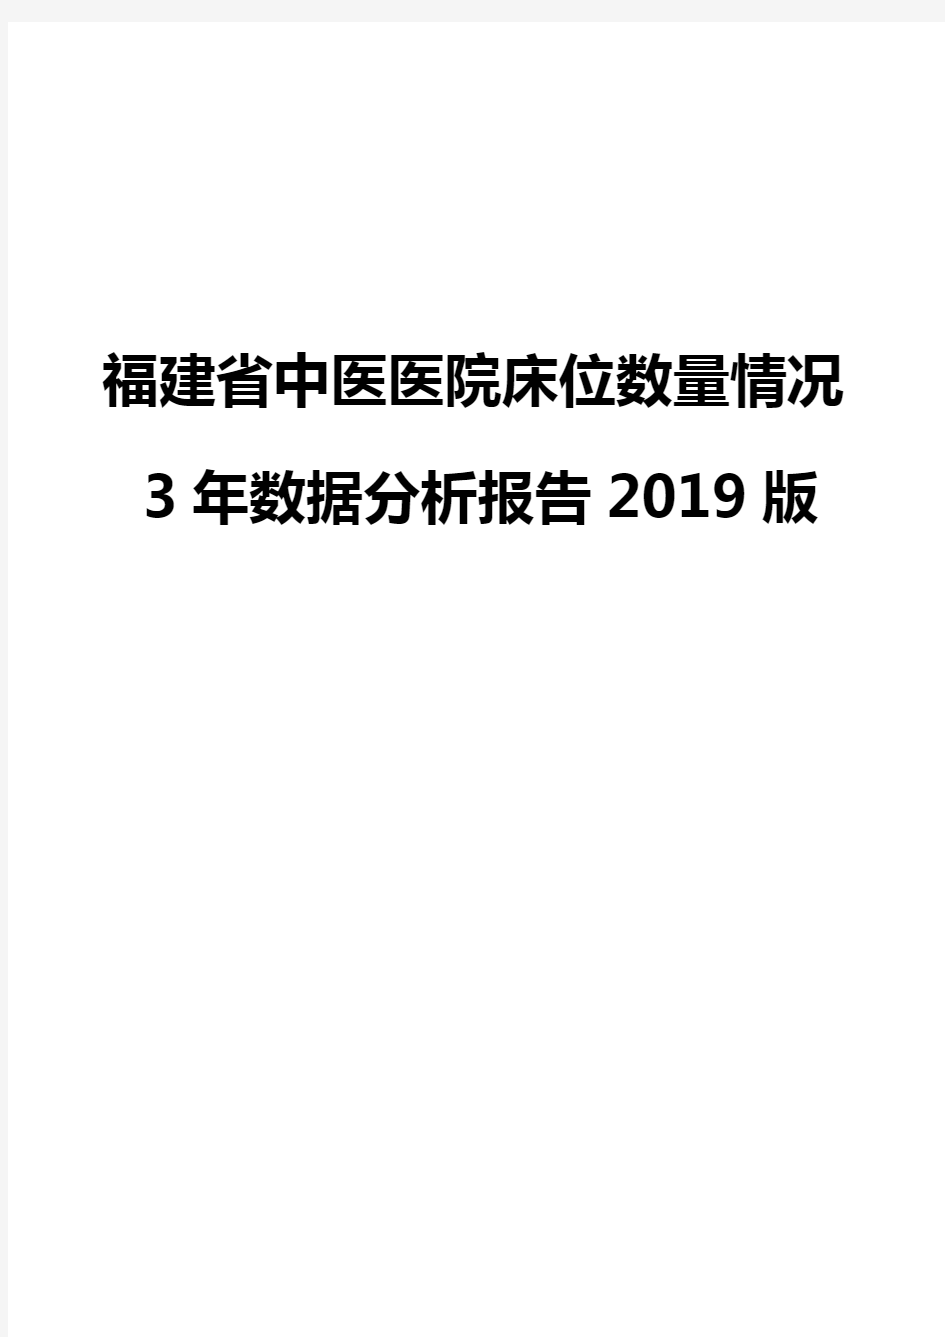 福建省中医医院床位数量情况3年数据分析报告2019版